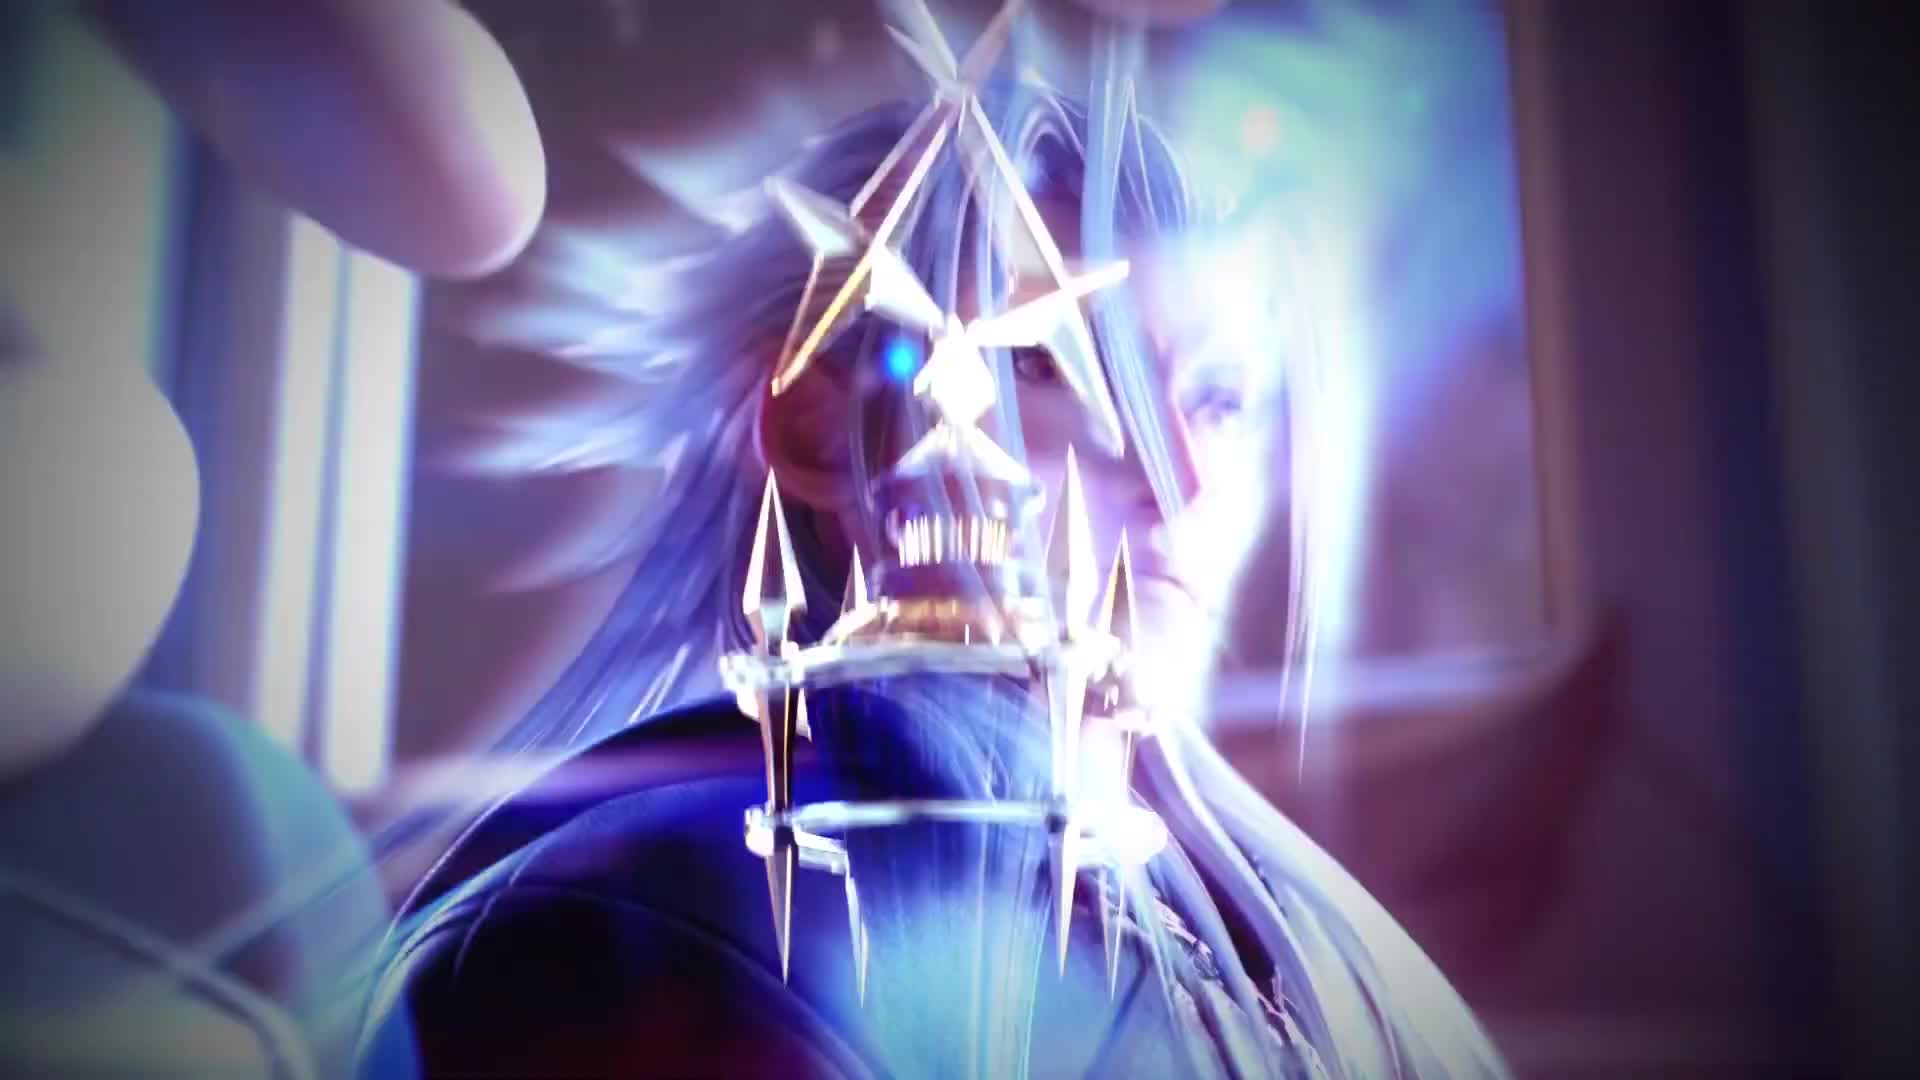 Kingdom Hearts III - opening video 